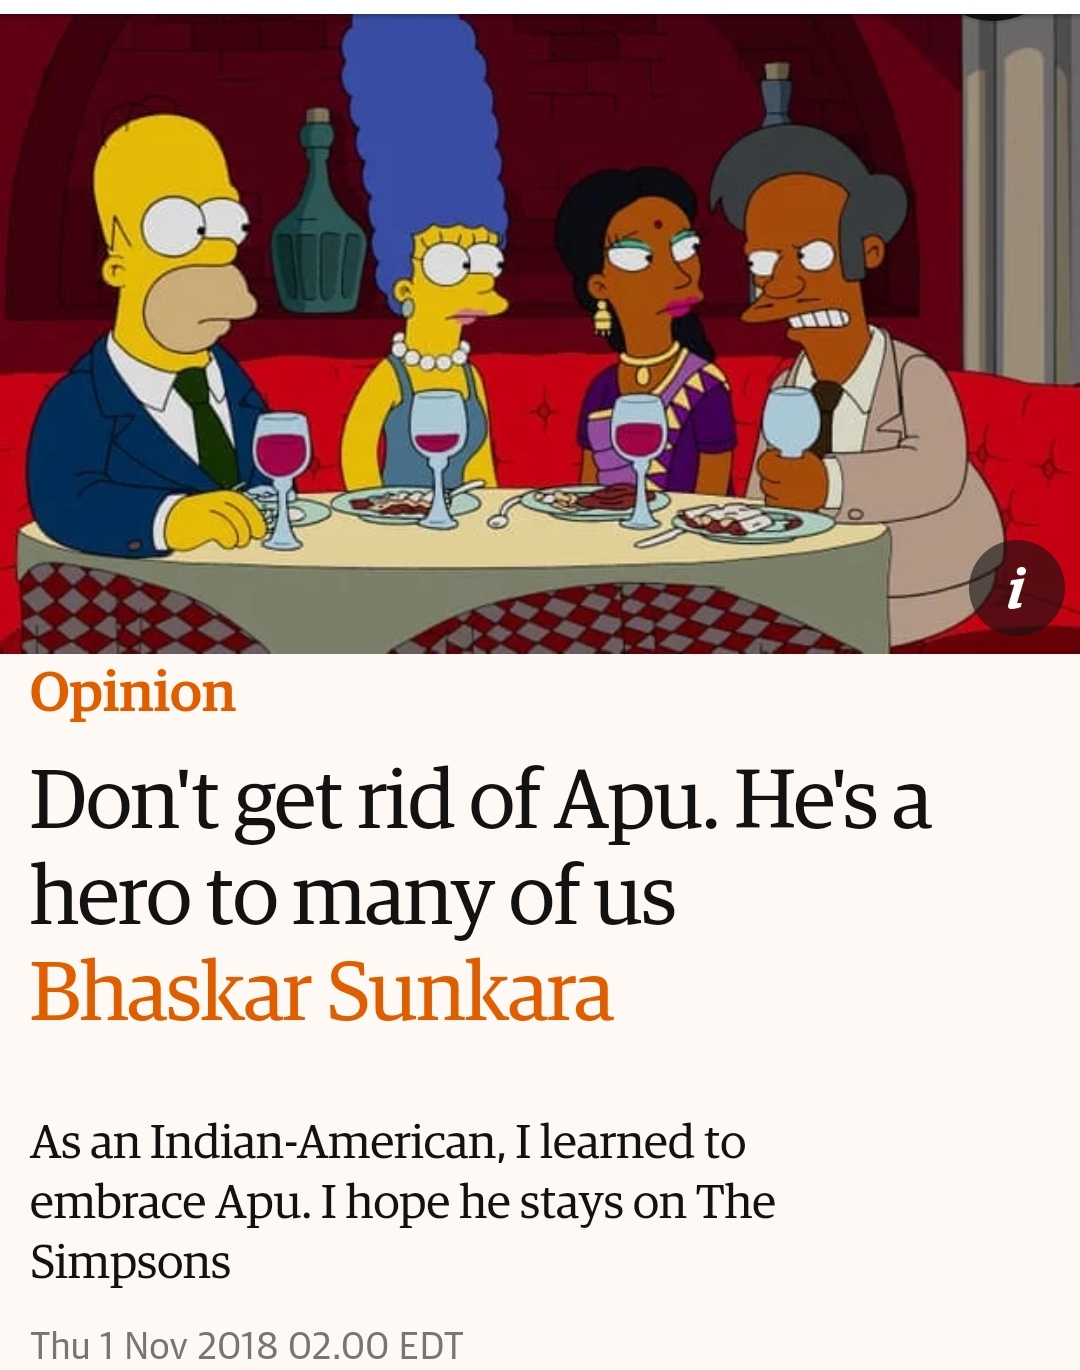 Abu on Simpsons plea to keep him